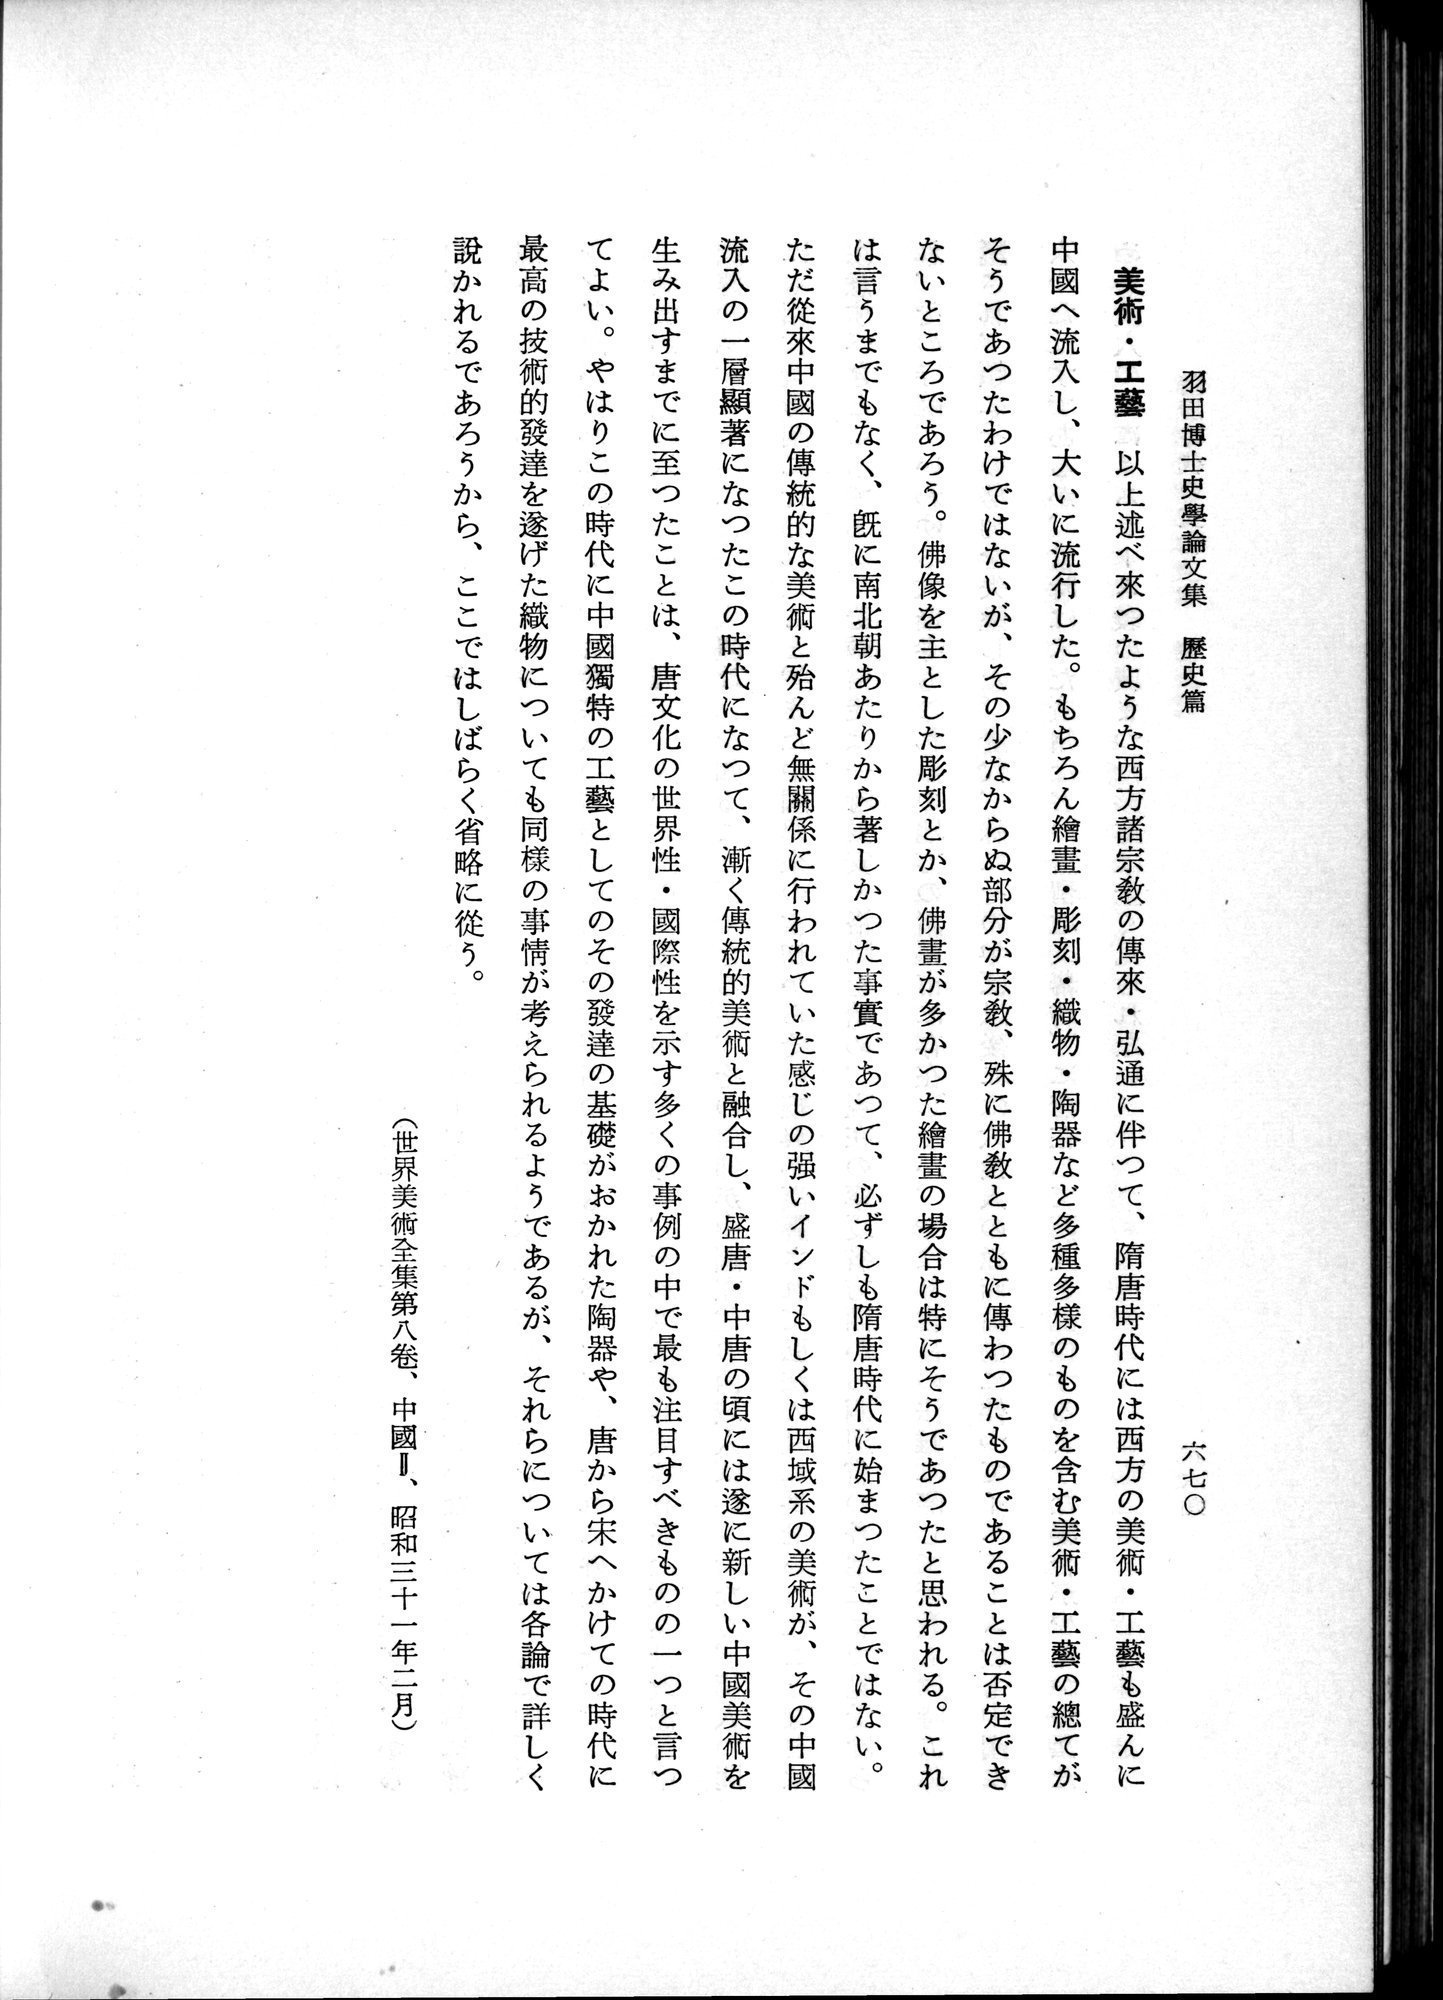 羽田博士史学論文集 : vol.1 / Page 708 (Grayscale High Resolution Image)